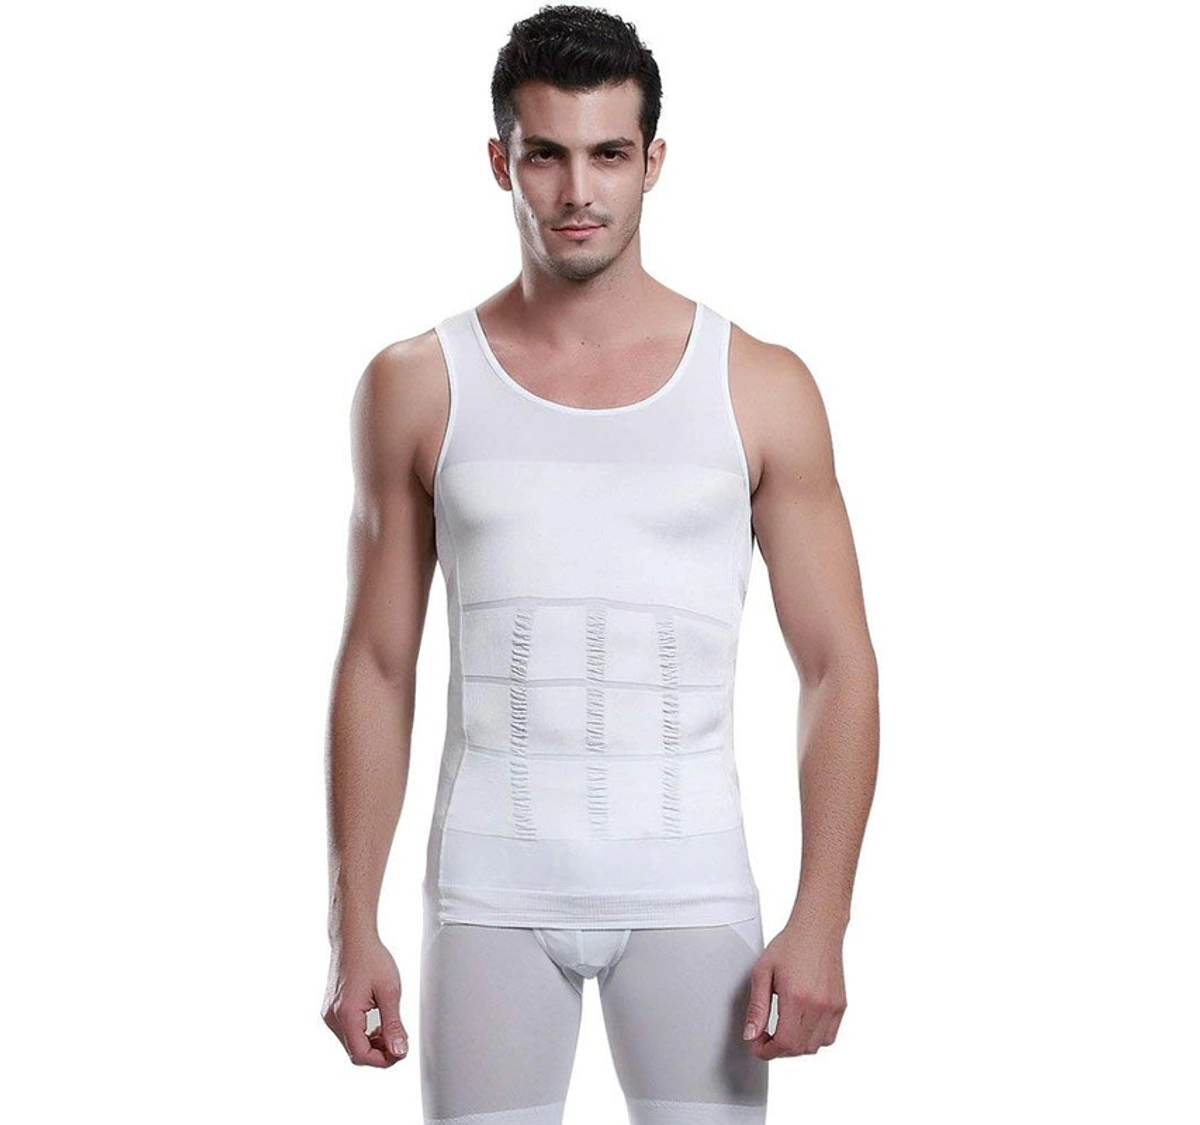 SLIM'N LIFT Slimming Body Shaper Vest For Men L UAE